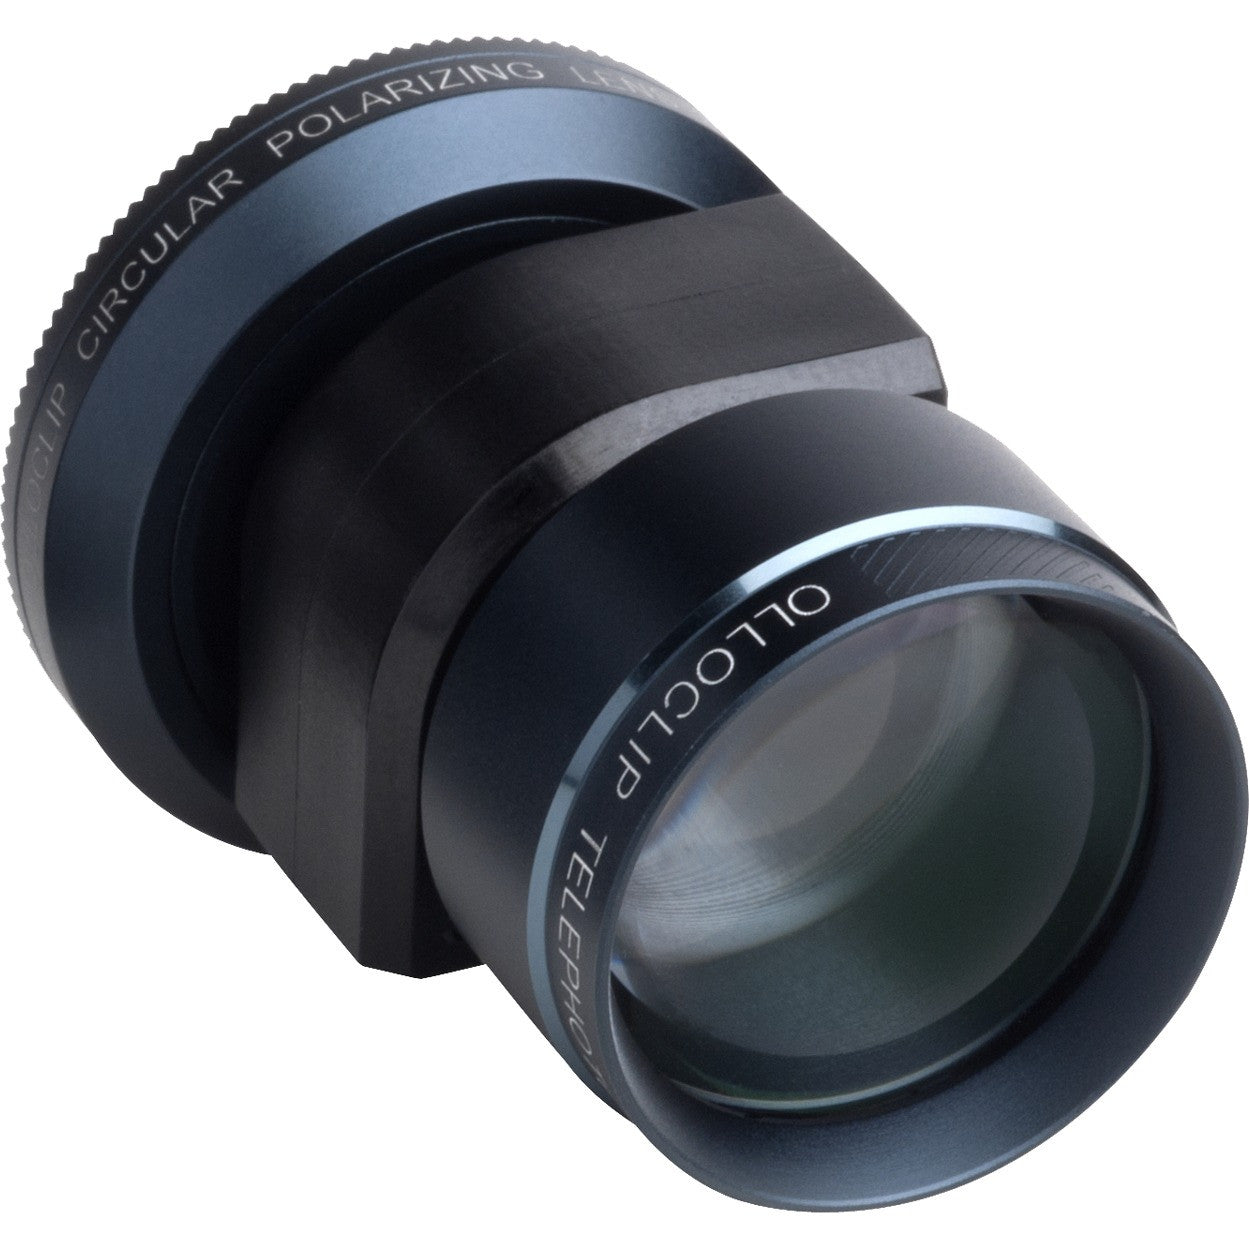 Olloclip - Telephoto, Circular Polarizer Lens